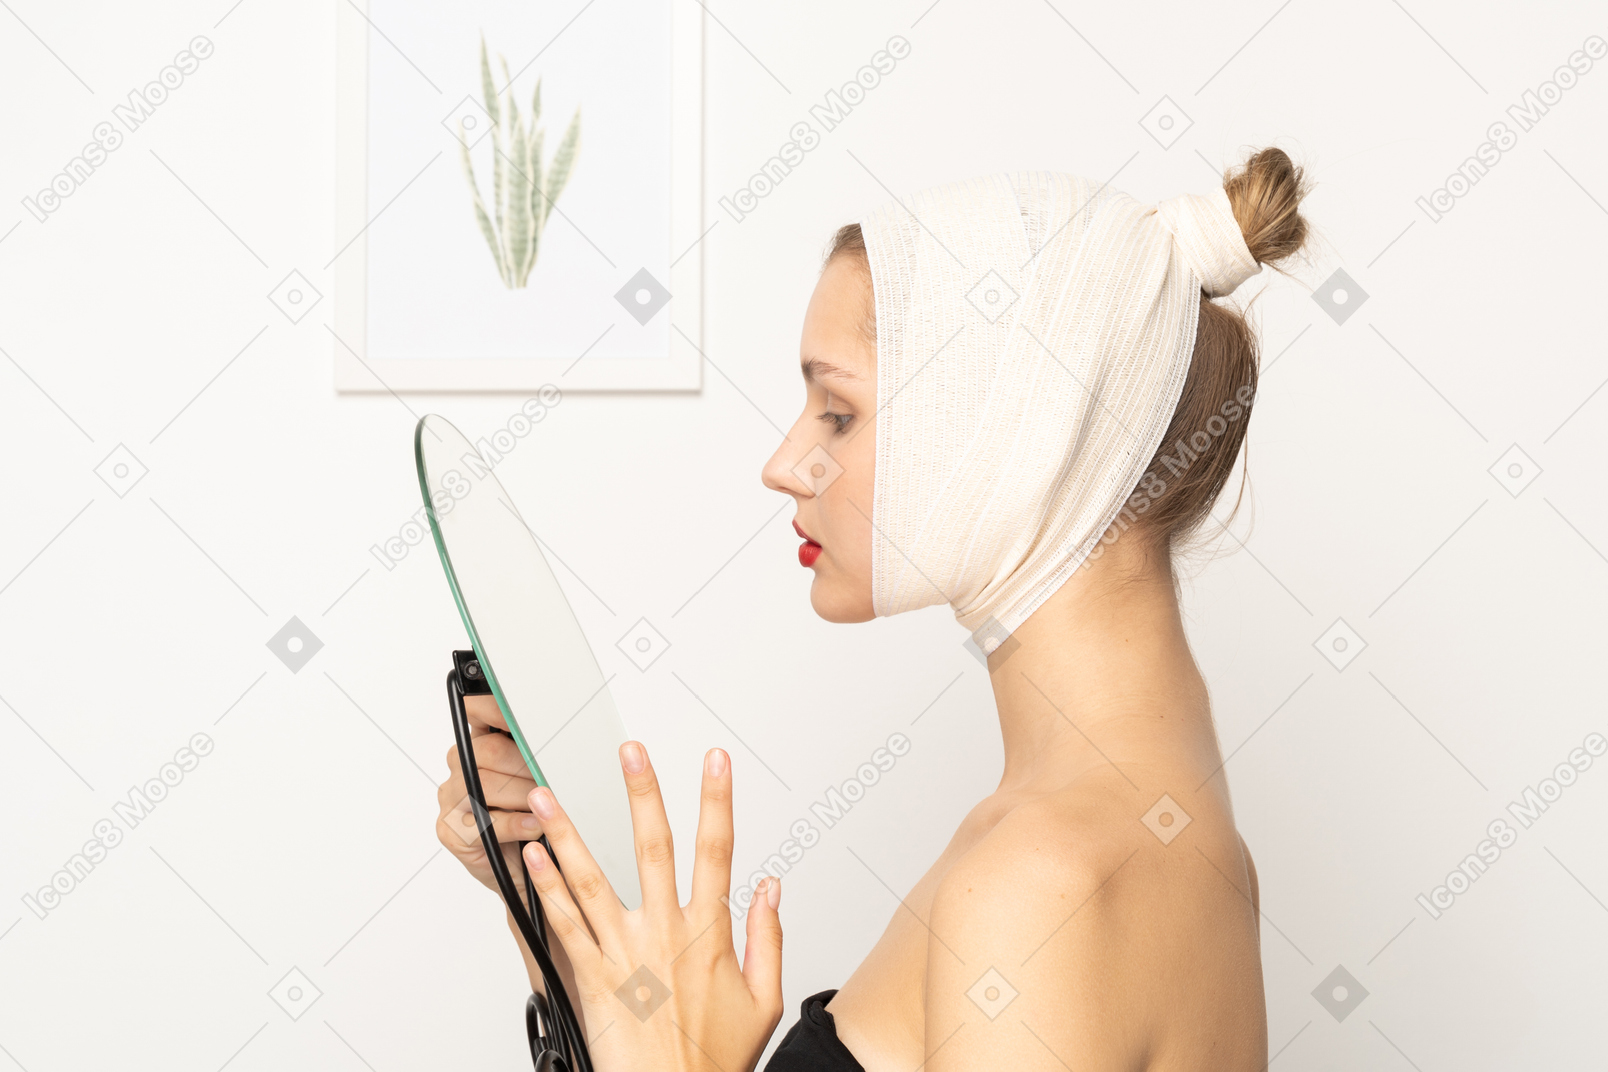 Vista lateral de uma jovem segurando um espelho